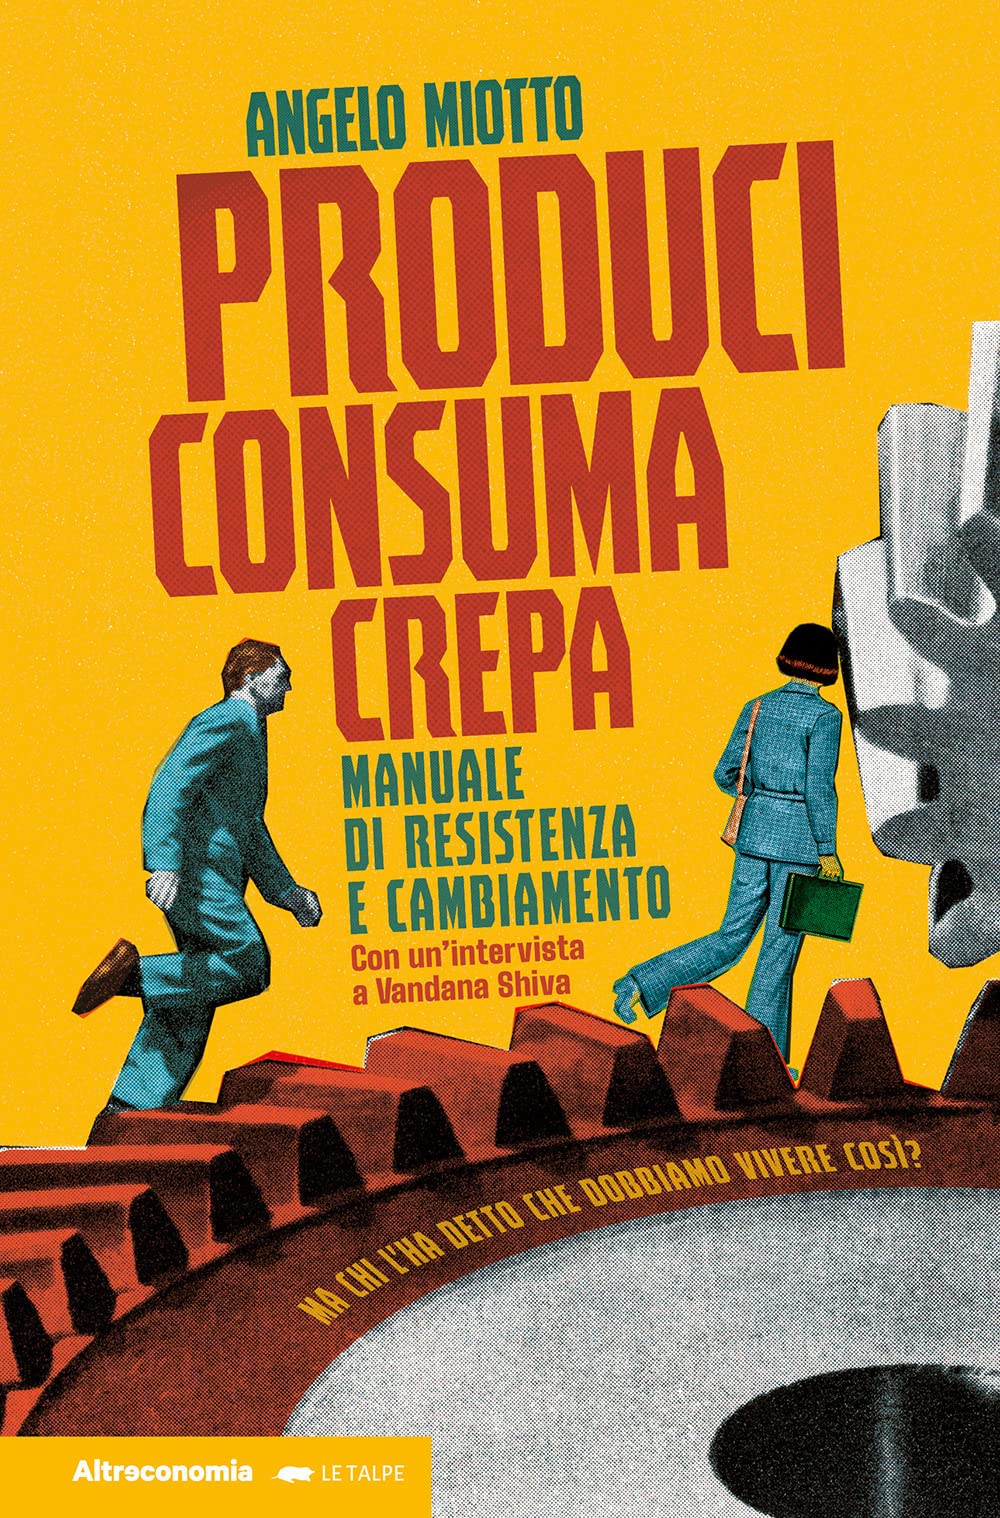 La copertina di "Produci, Consuma, Crepa" di Angelo Miotto (Altreconomia, 2022)